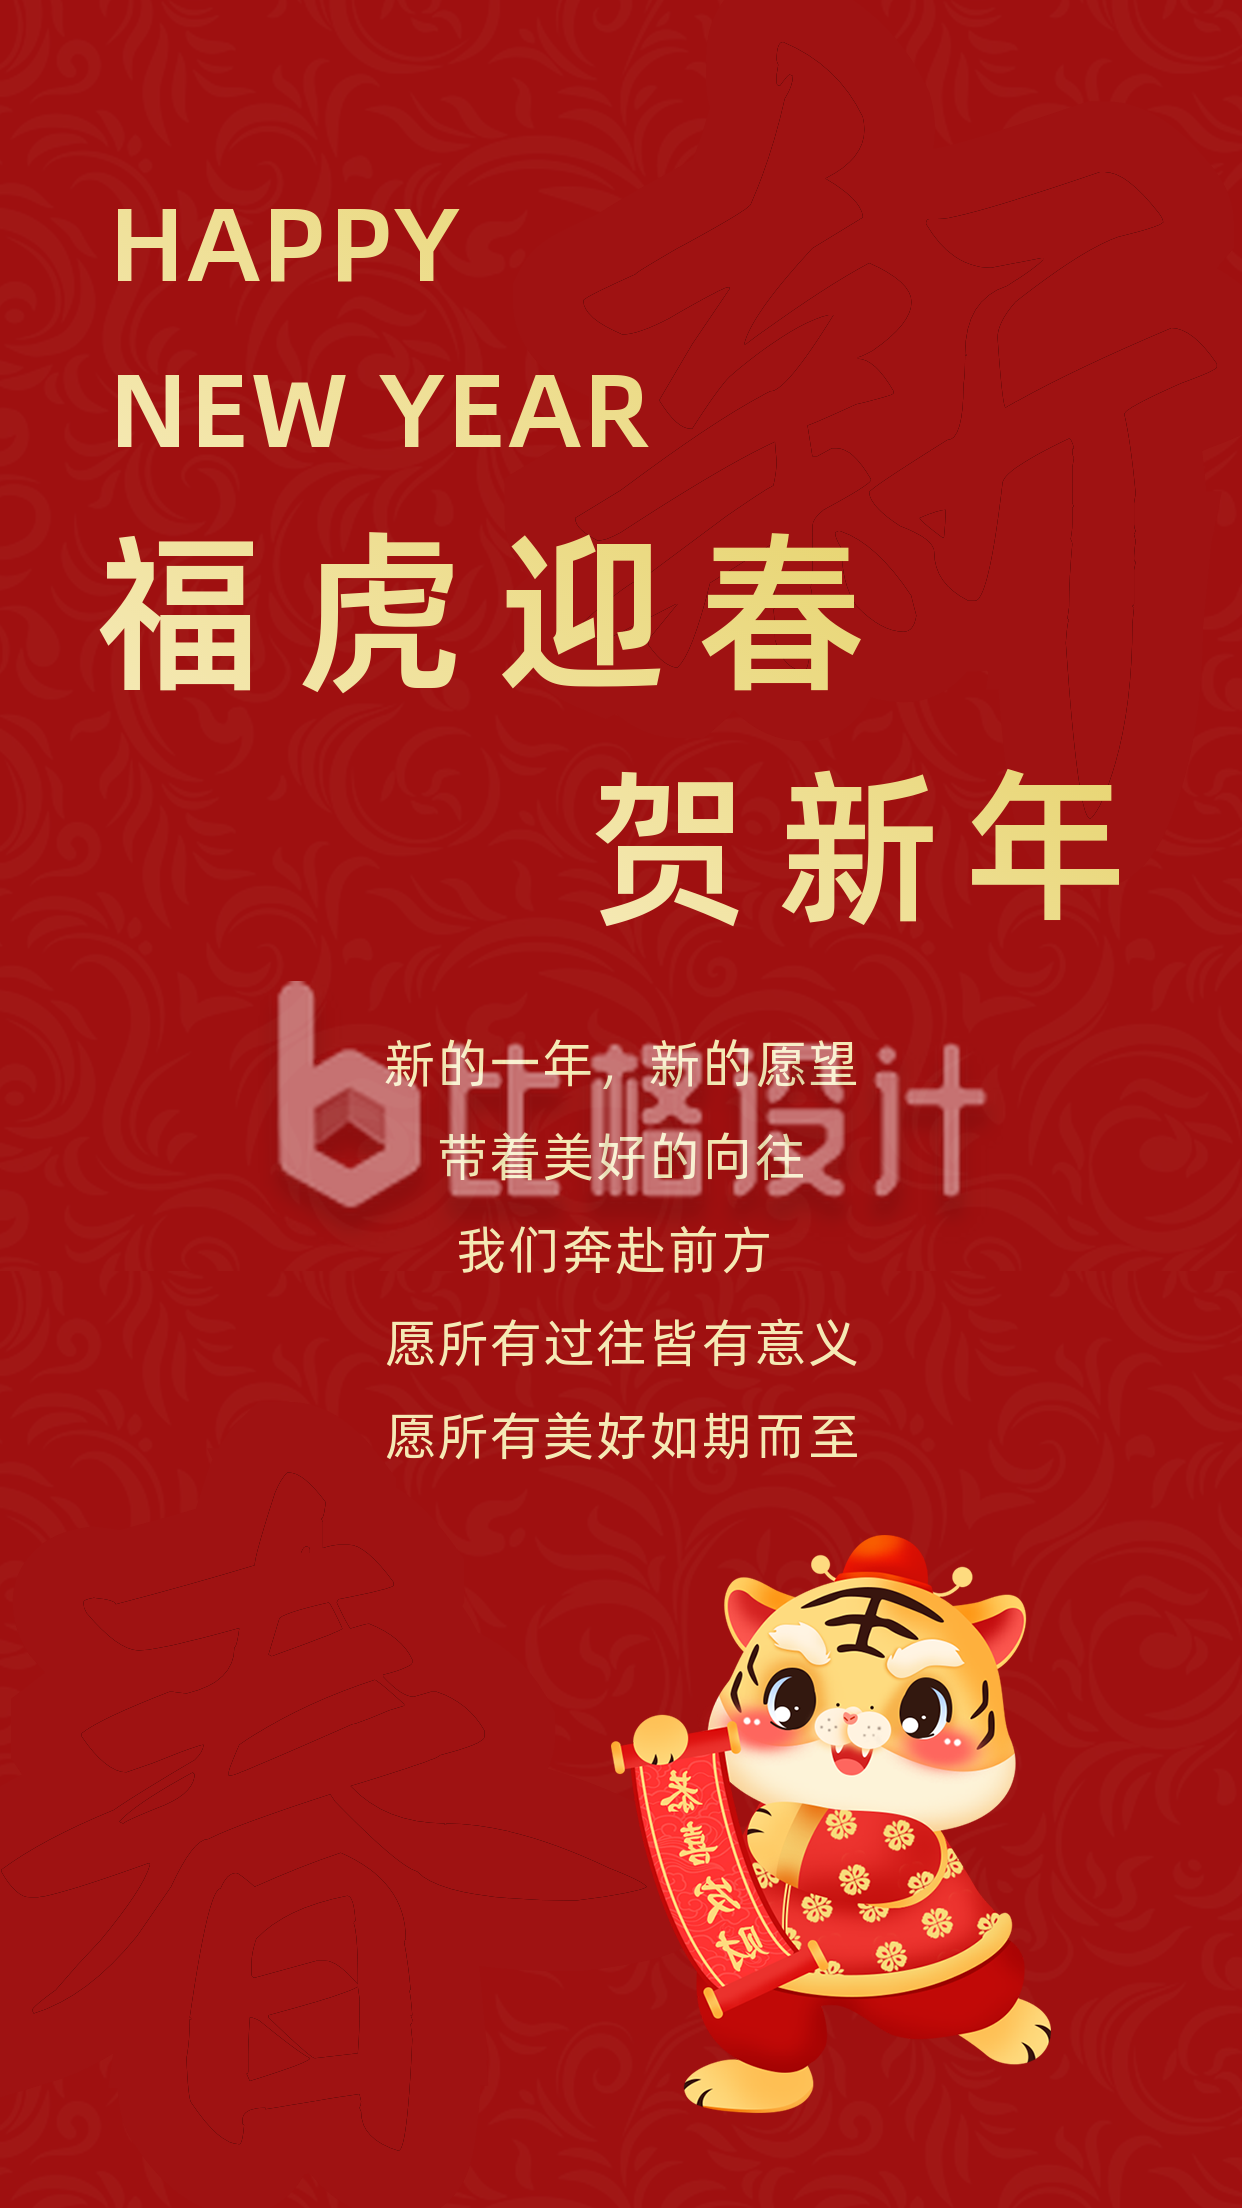 中国传统新年祝福虎年大吉竖版配图